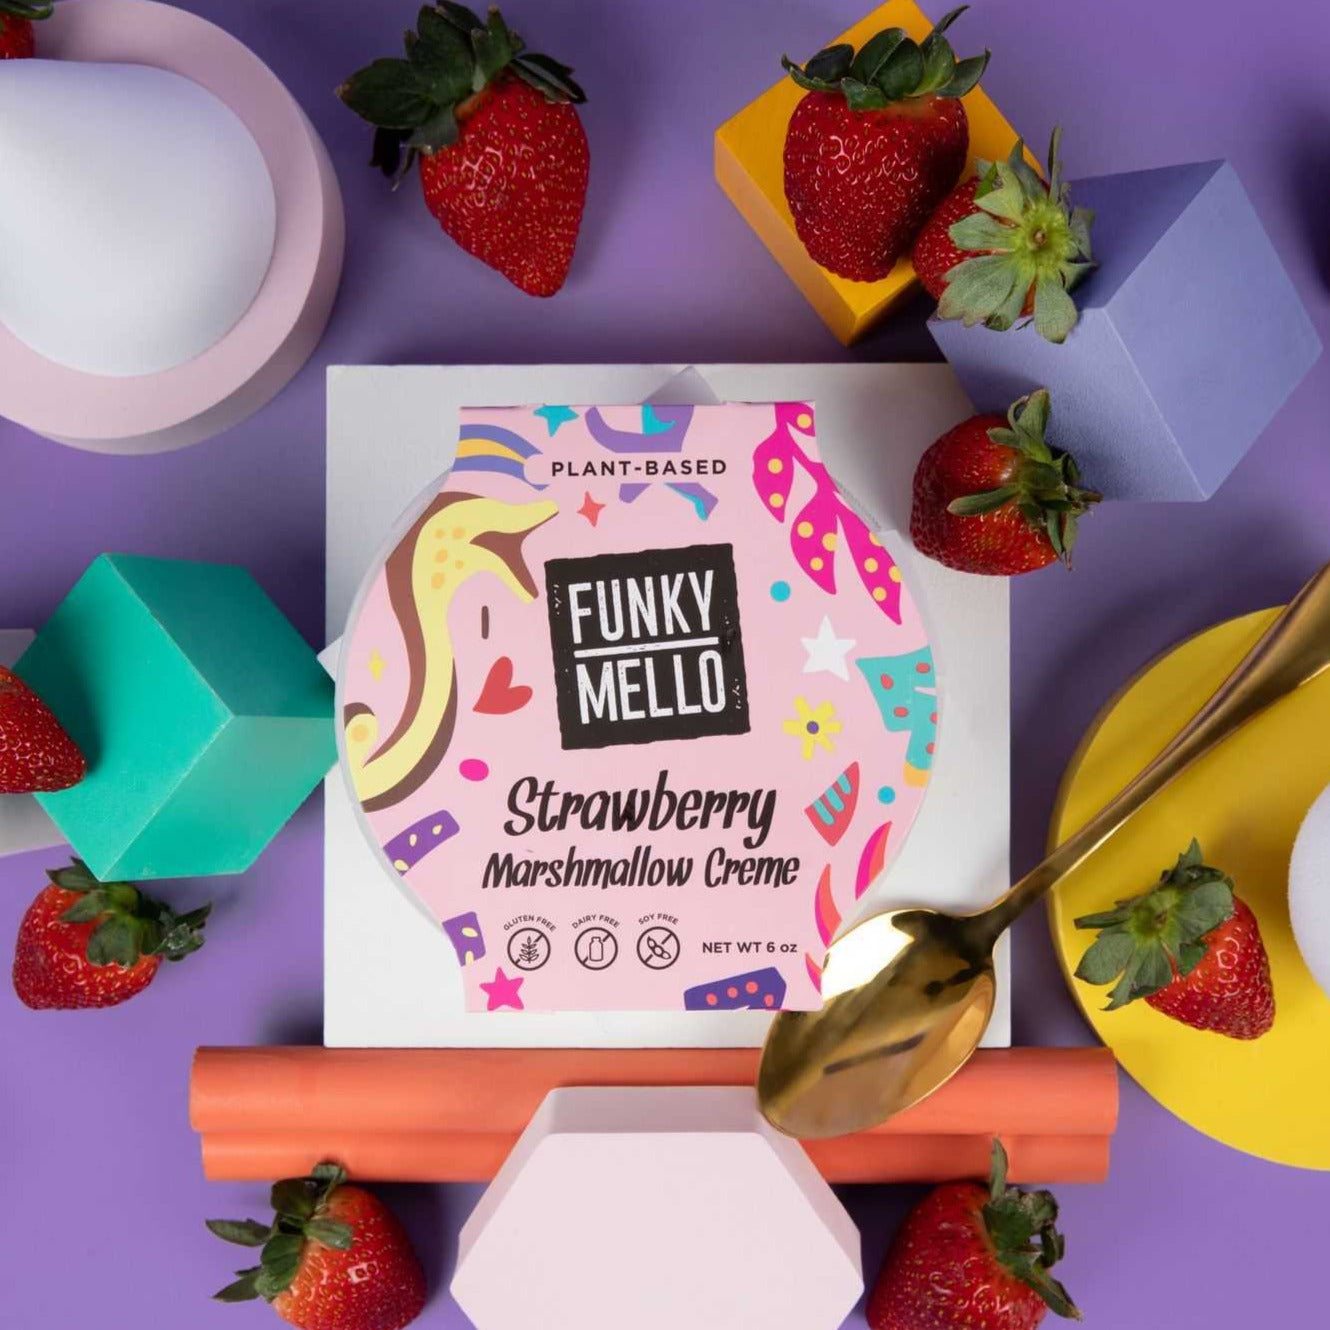 Marshmallow Creme - Strawberry Funky Mello